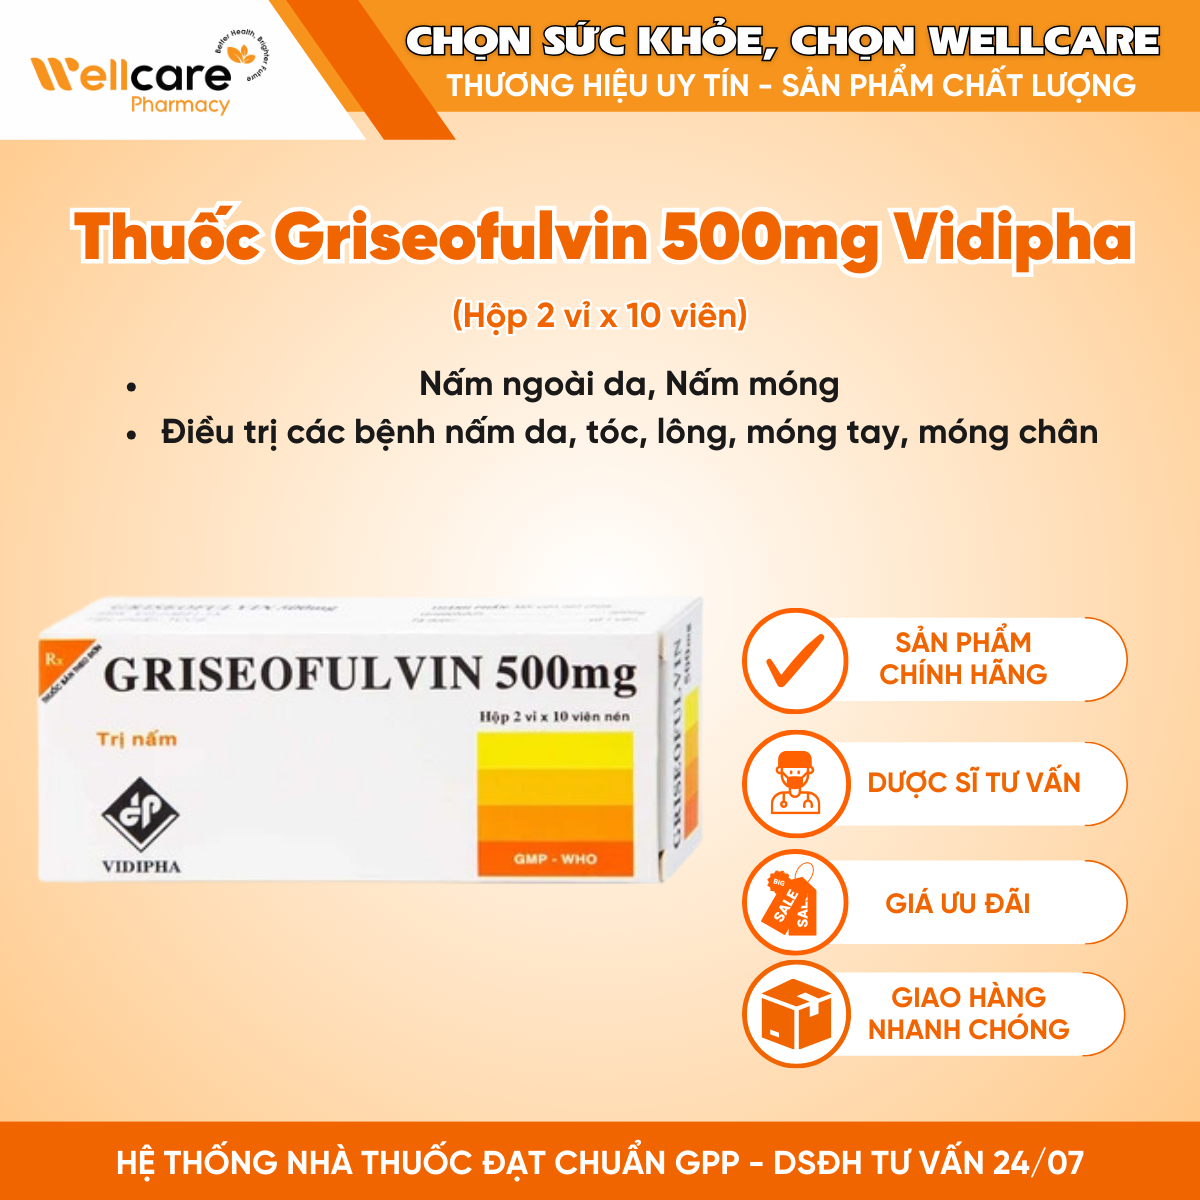 Thuốc Griseofulvin 500mg Vidipha – Điều trị nhiễm trùng nấm da, tóc (Hộp 2 vỉ x 10 viên)